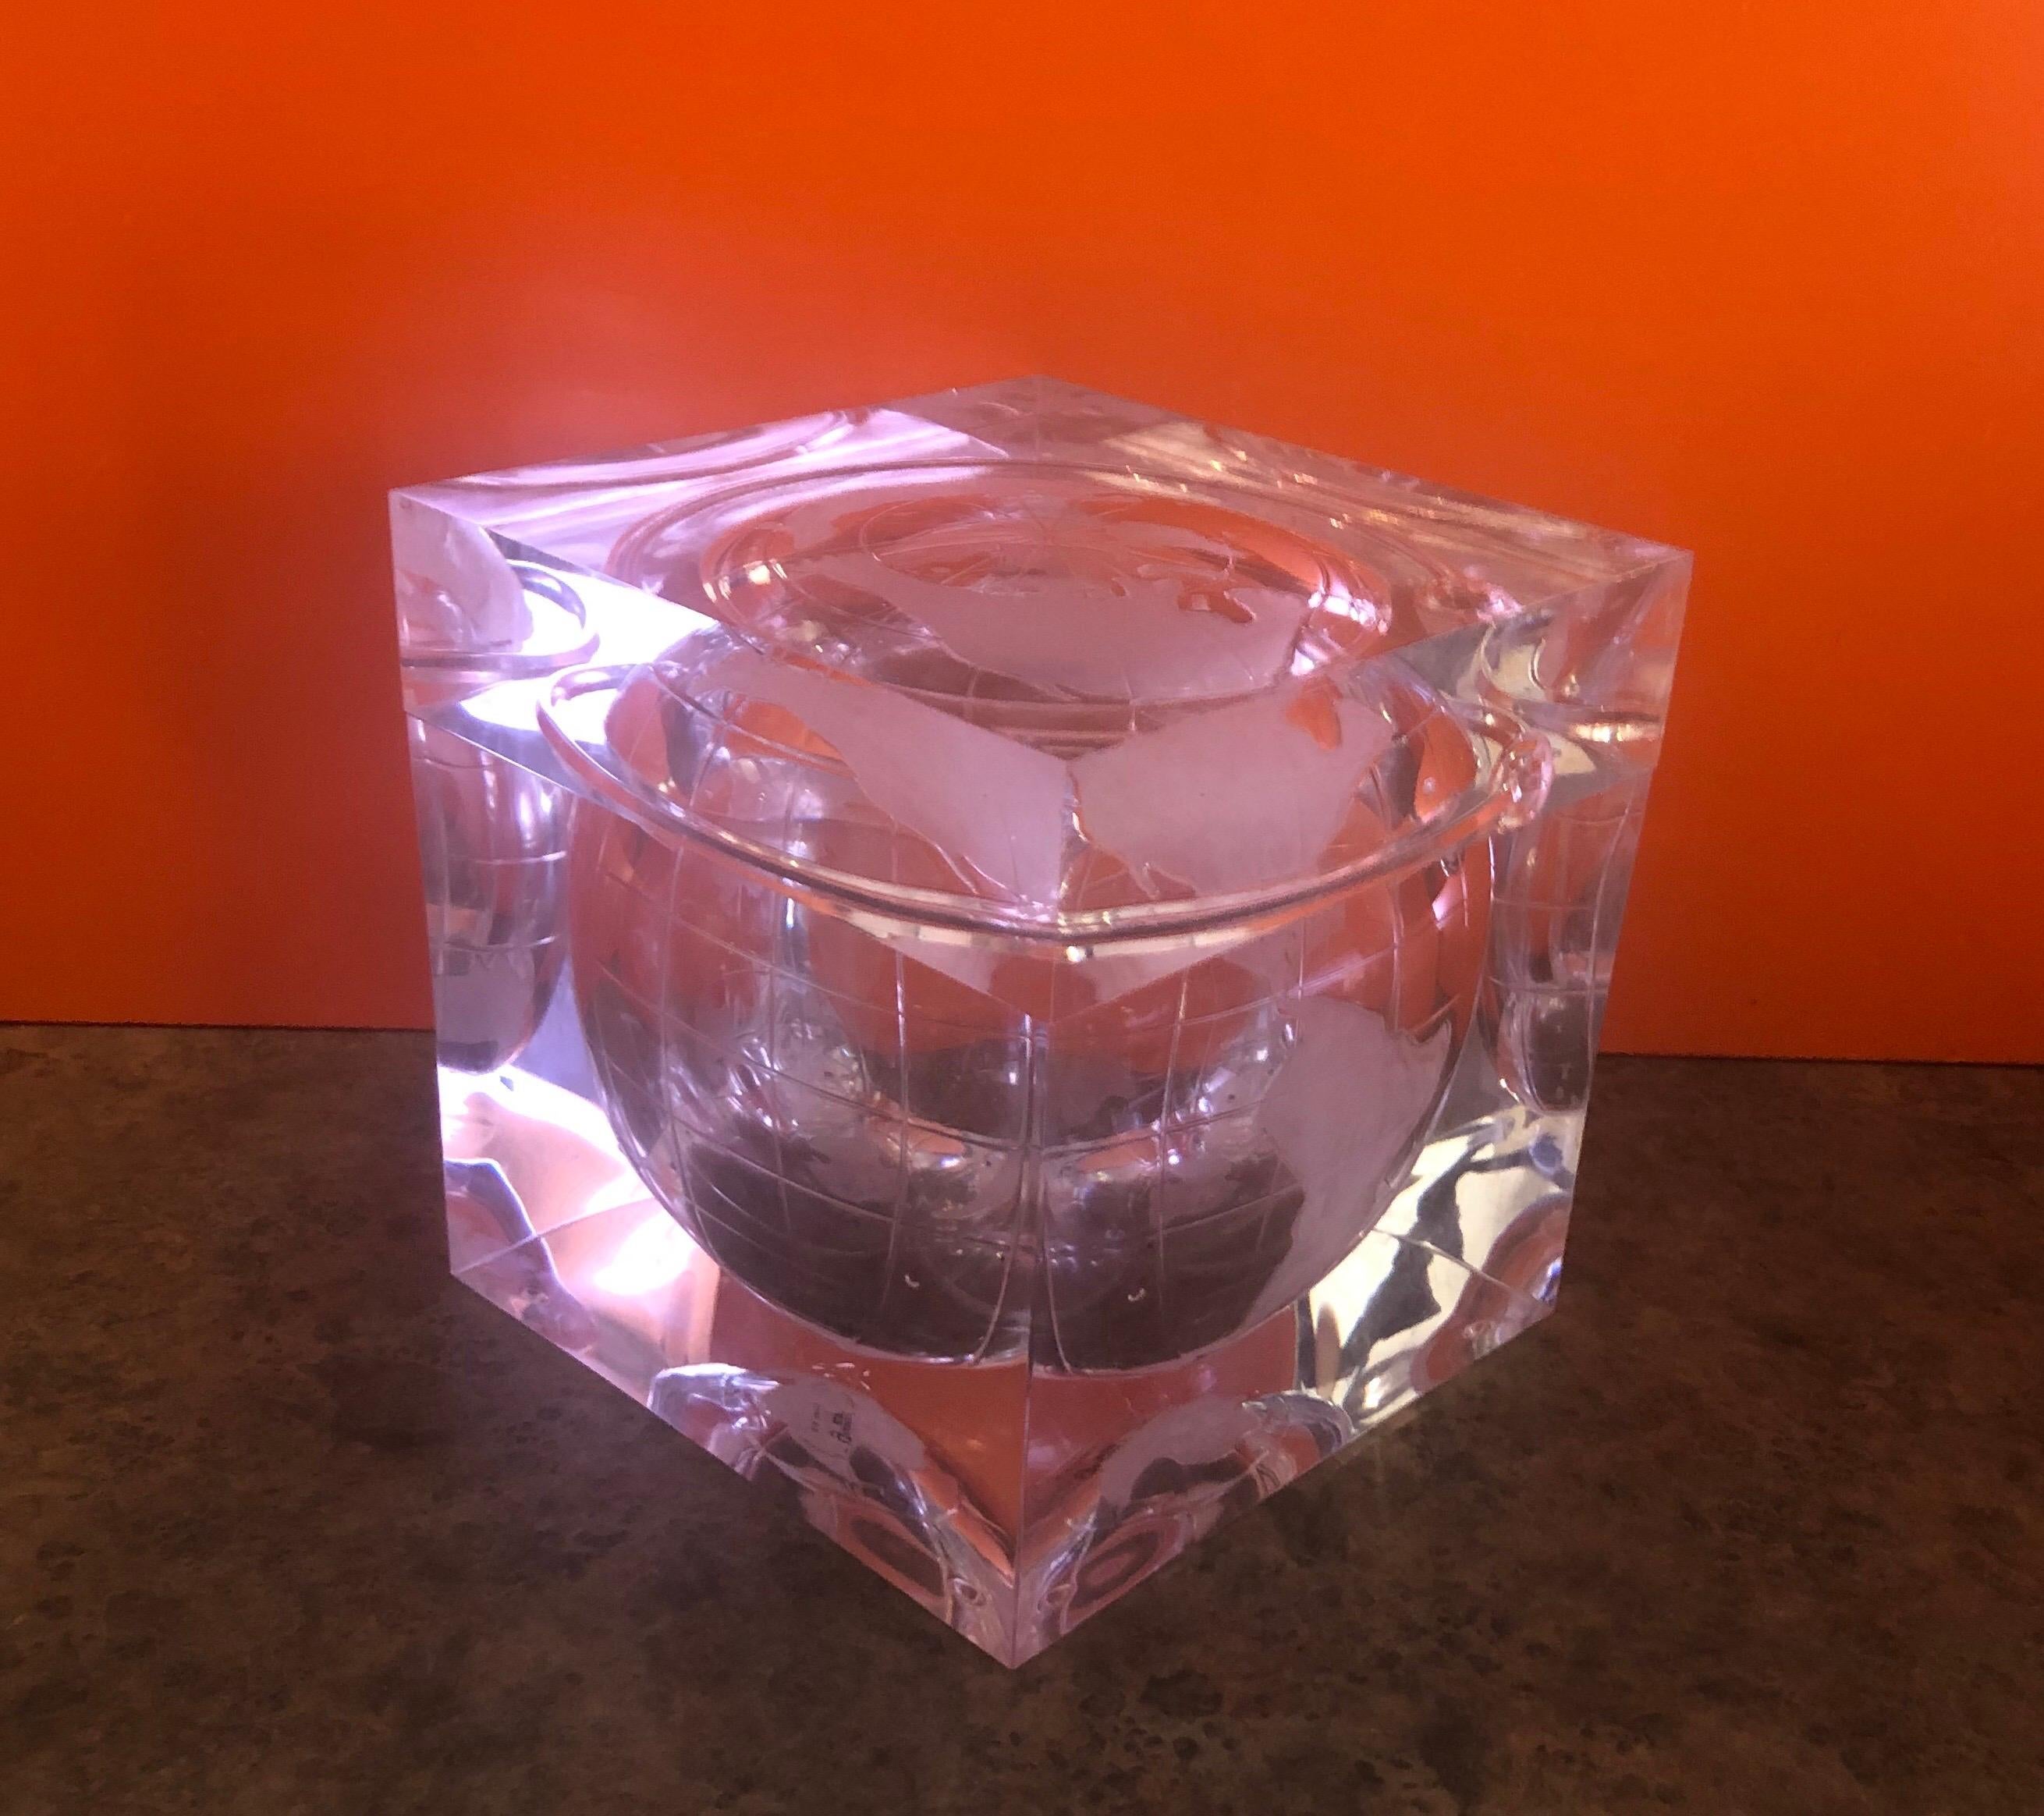 Eiskübel aus geätztem Lucit von Alessandro Albrizzi, ca. 1980er Jahre. Entworfen als klarer Lucite-Würfel mit einer geätzten kreisförmigen Darstellung der Erde auf der Innenseite des Eimers mit abnehmbarem Deckel. Der Eiskübel ist in gutem Zustand